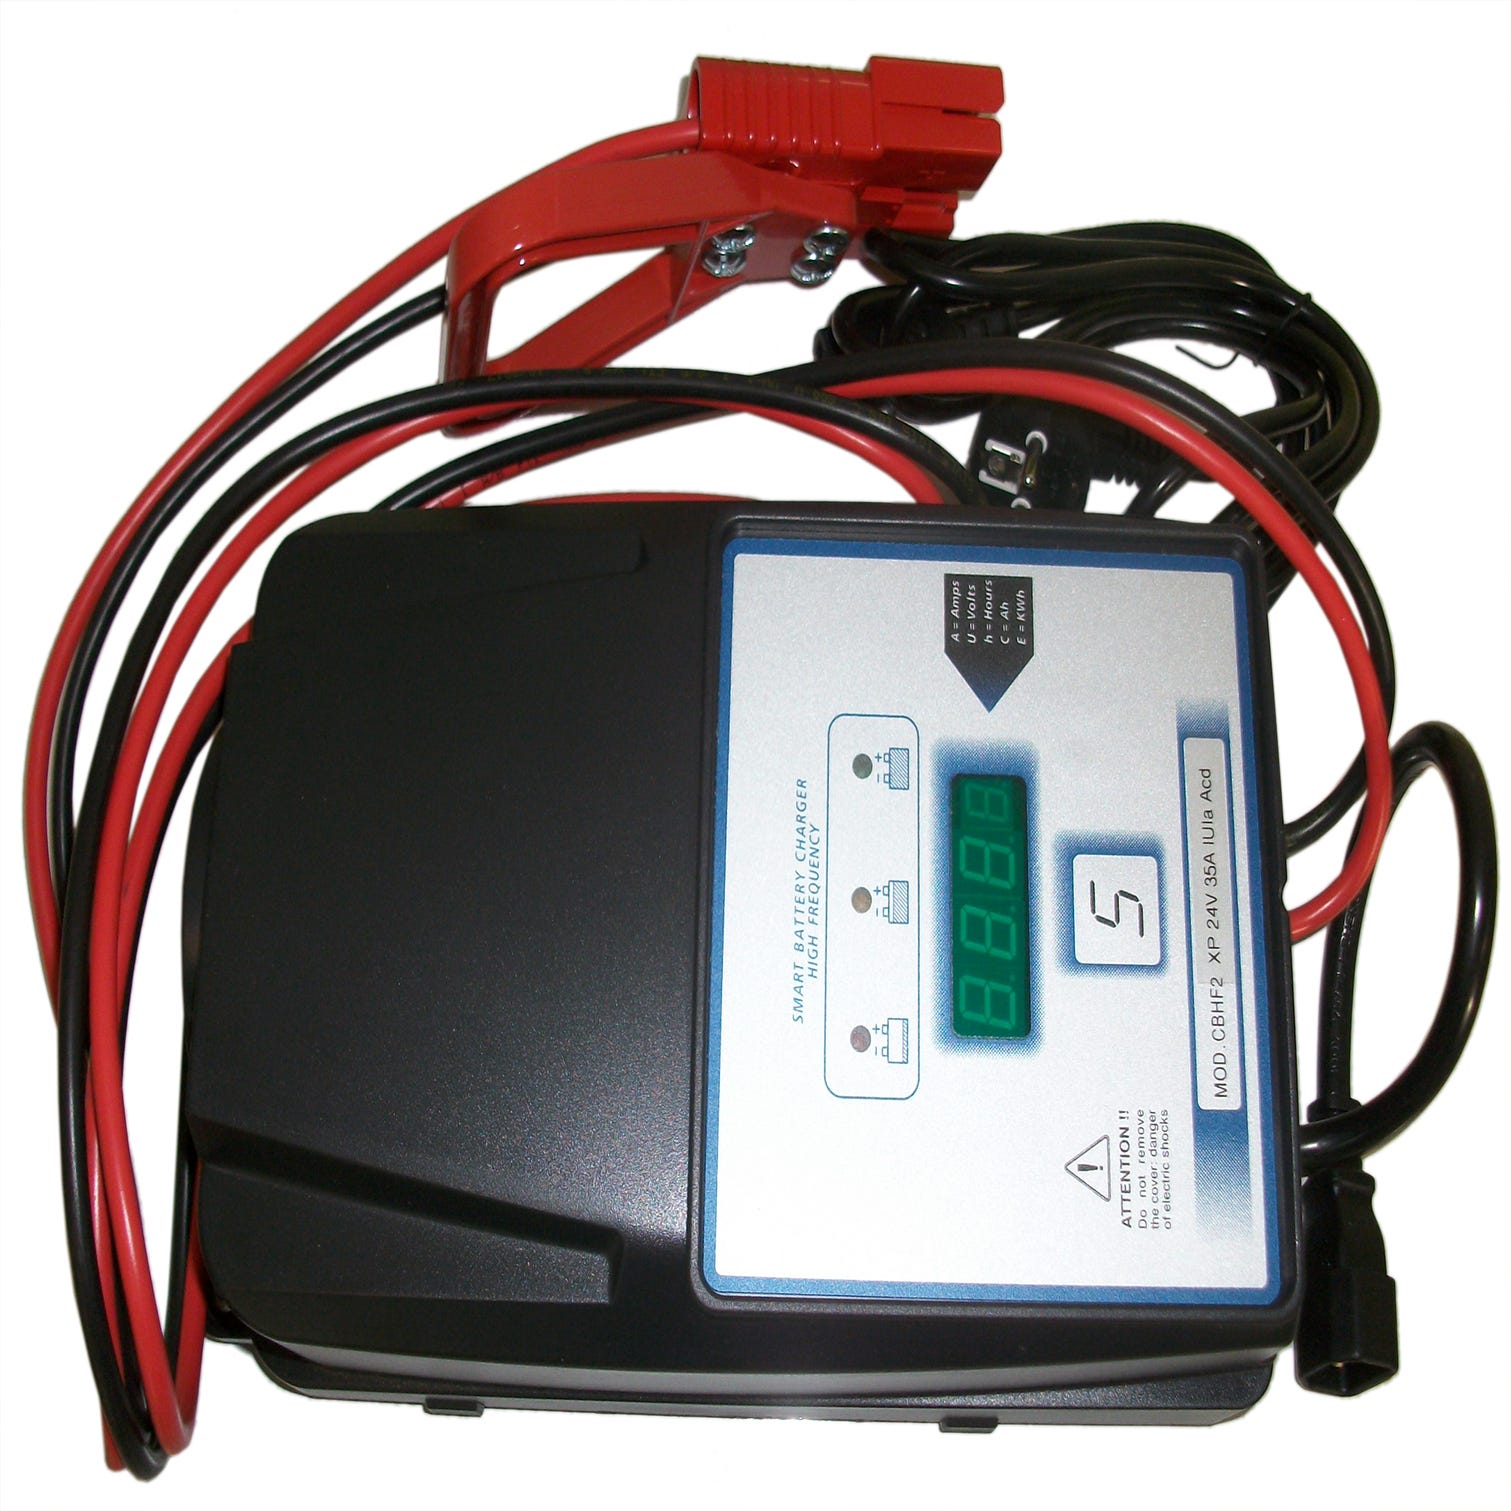 Cargador de batería CEVIK de 12 a 24v con indicador de carga